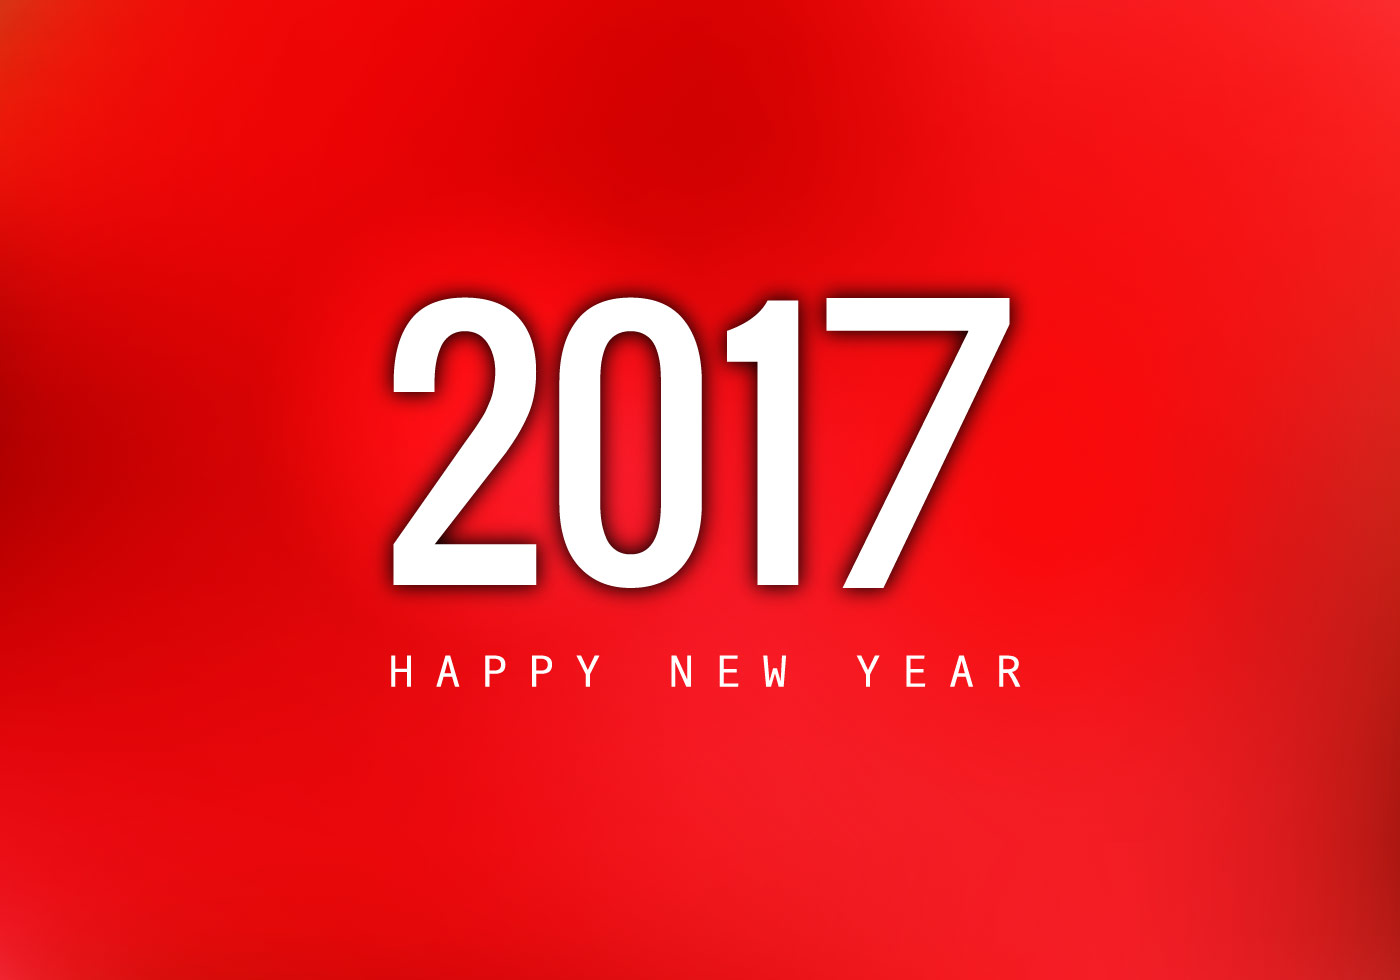 felice anno nuovo 2017 sfondo,rosso,testo,font,grafica,disegno grafico